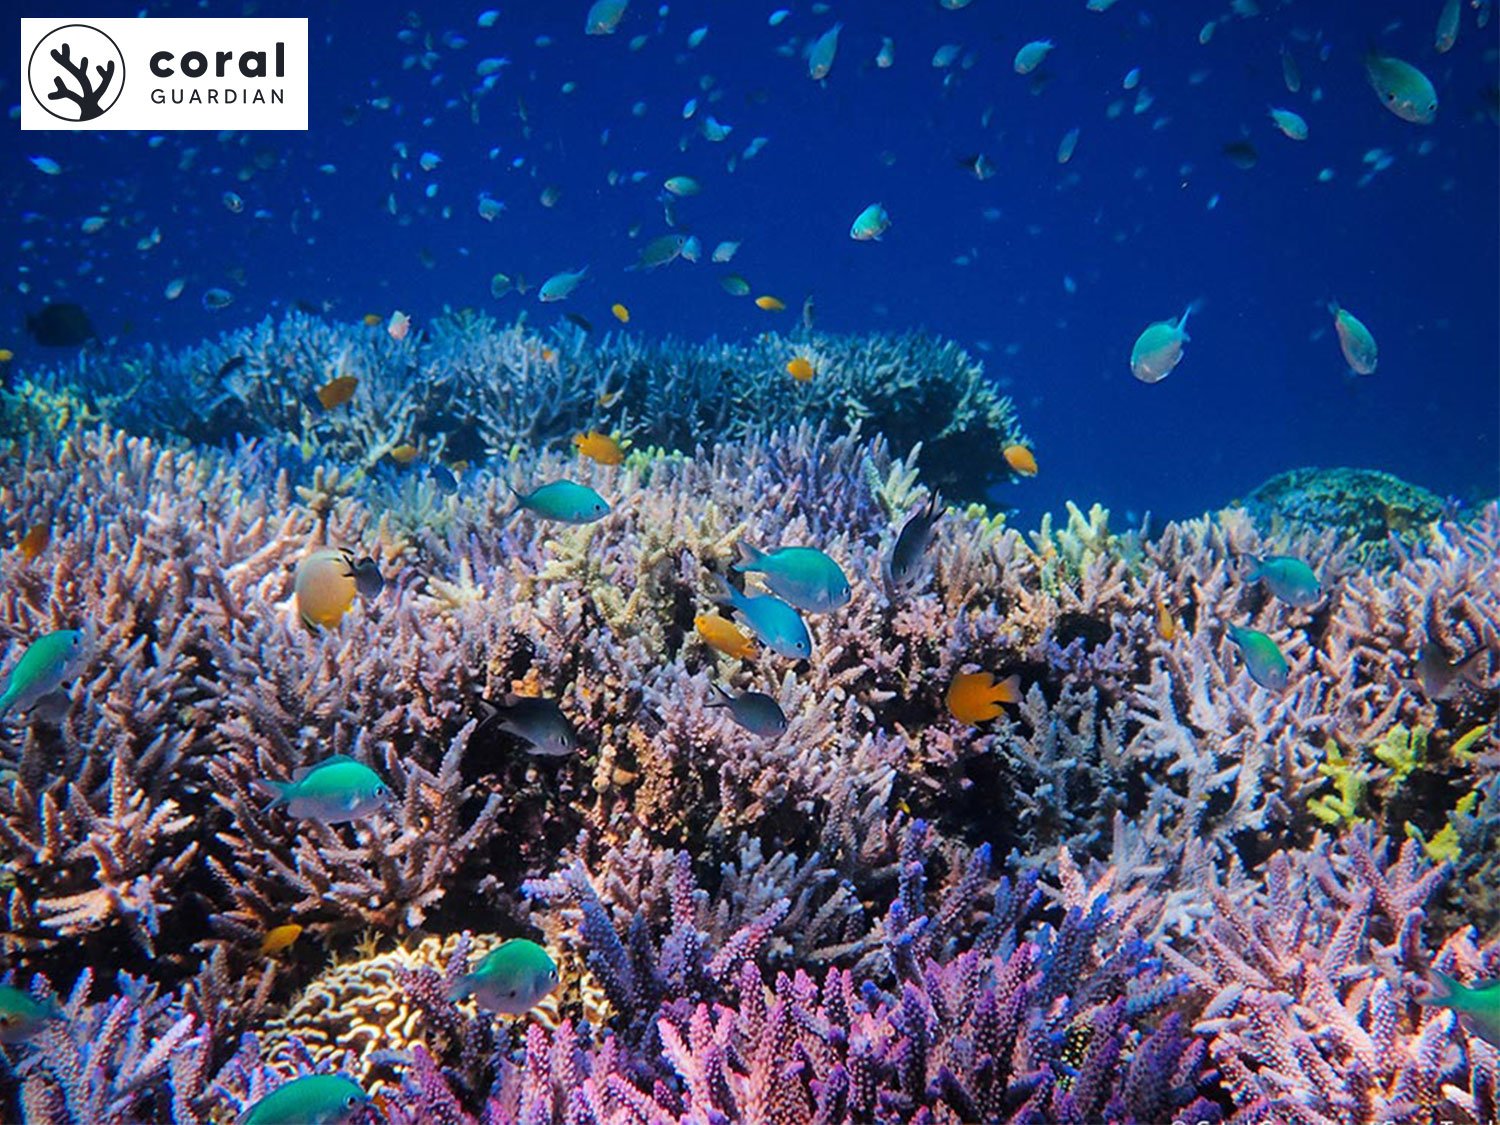 Coraux et biodiversité marine Coral Guardian